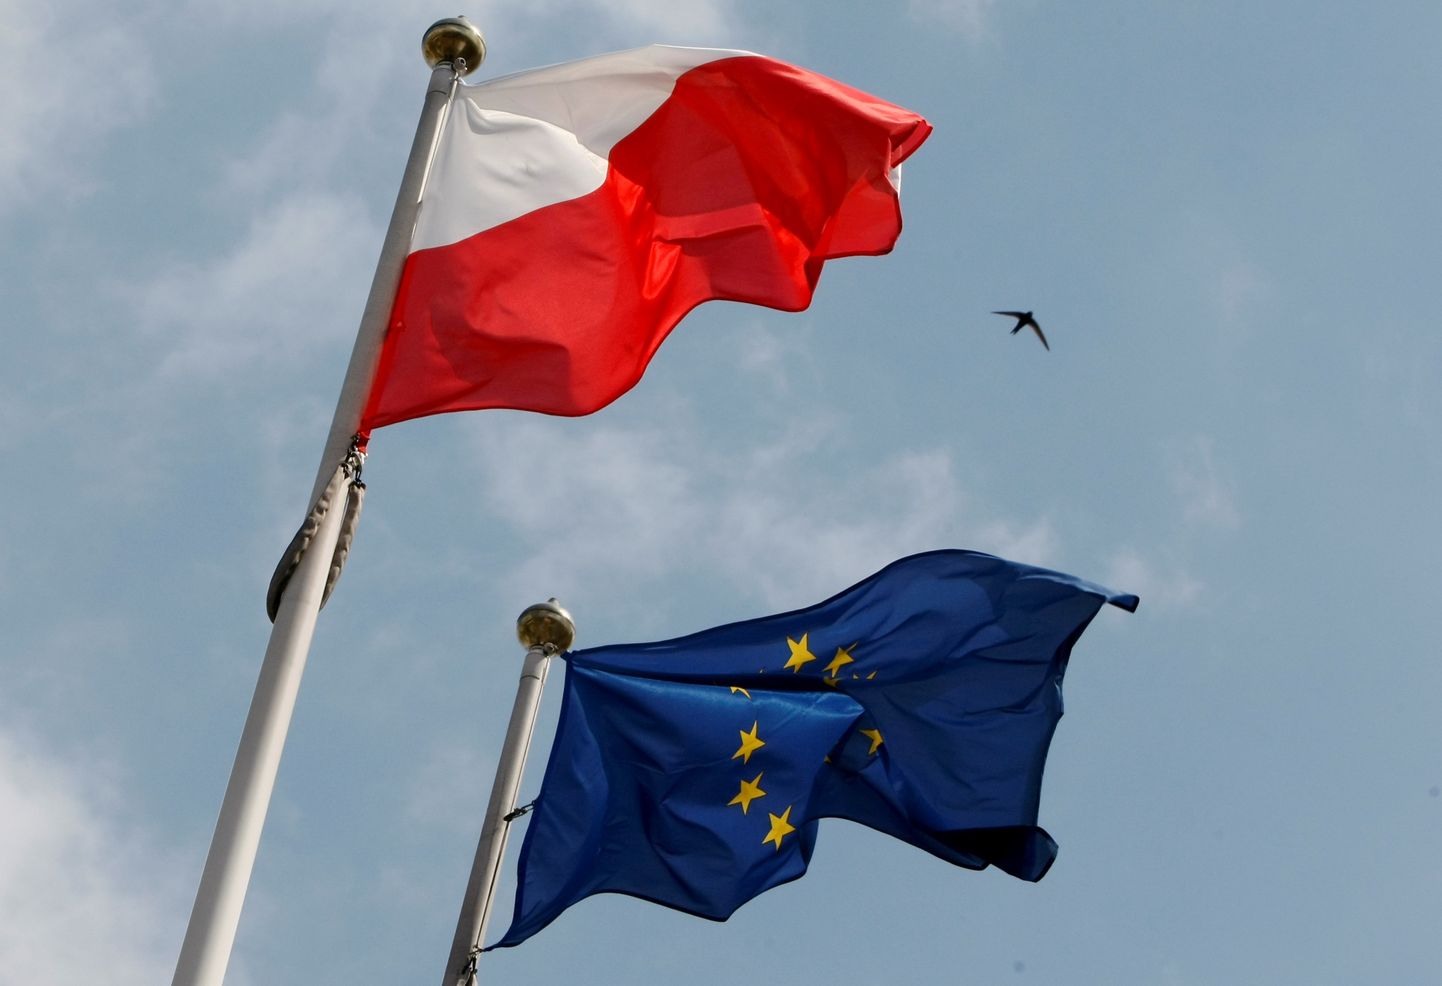 Poola ja Euroopa Liidu lipp. Foto on illustratiivne.